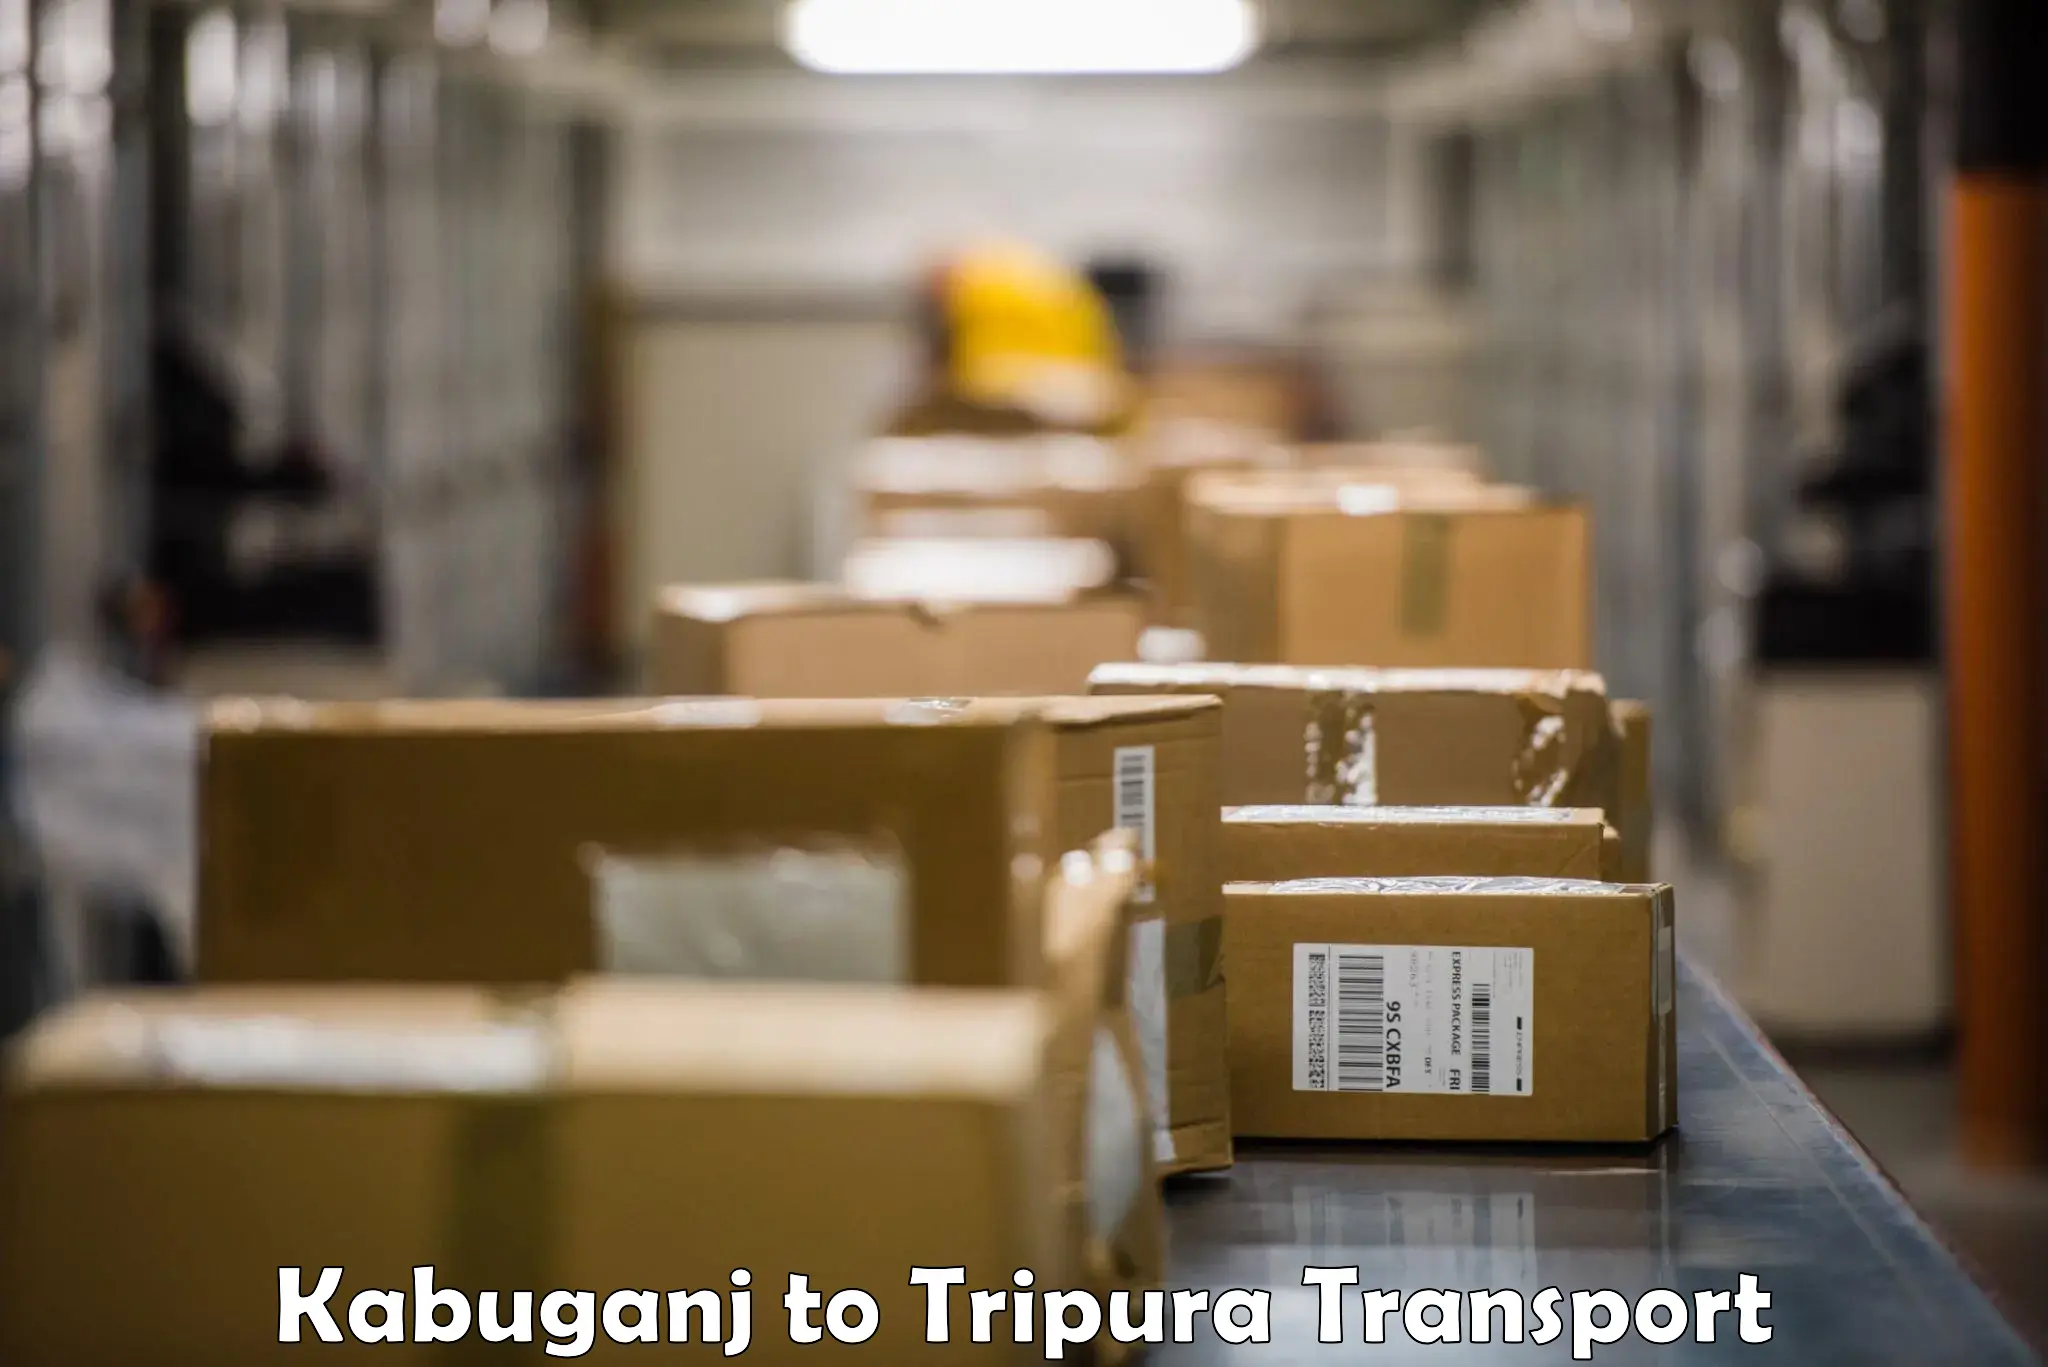 Pick up transport service Kabuganj to Dhalai